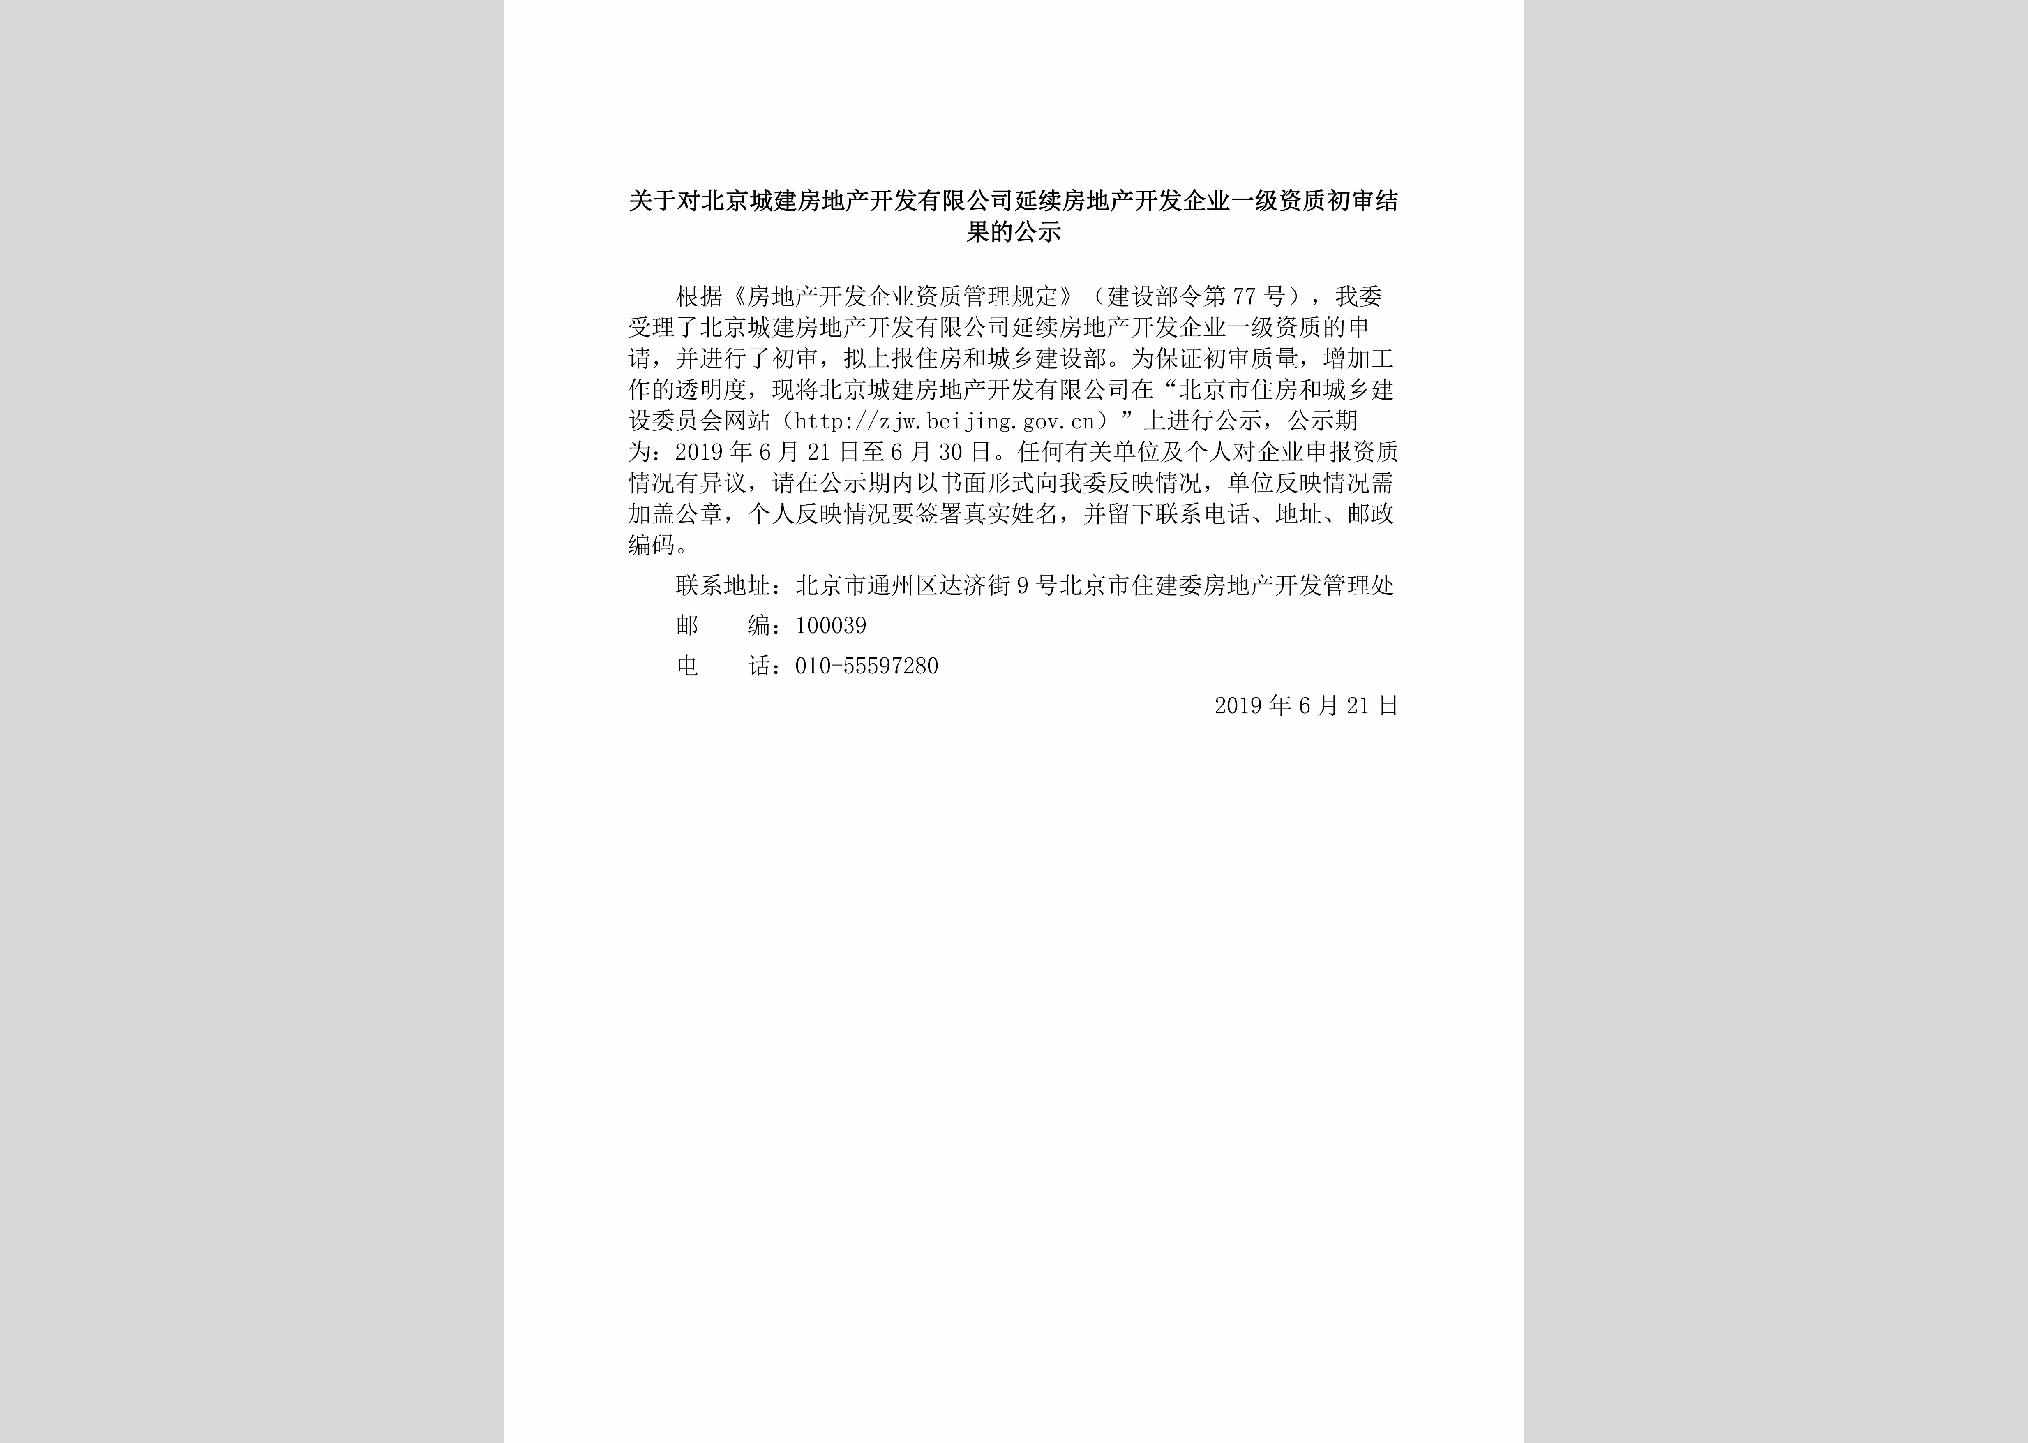 BJ-BJCJFDCK-2019：关于对北京城建房地产开发有限公司延续房地产开发企业一级资质初审结果的公示